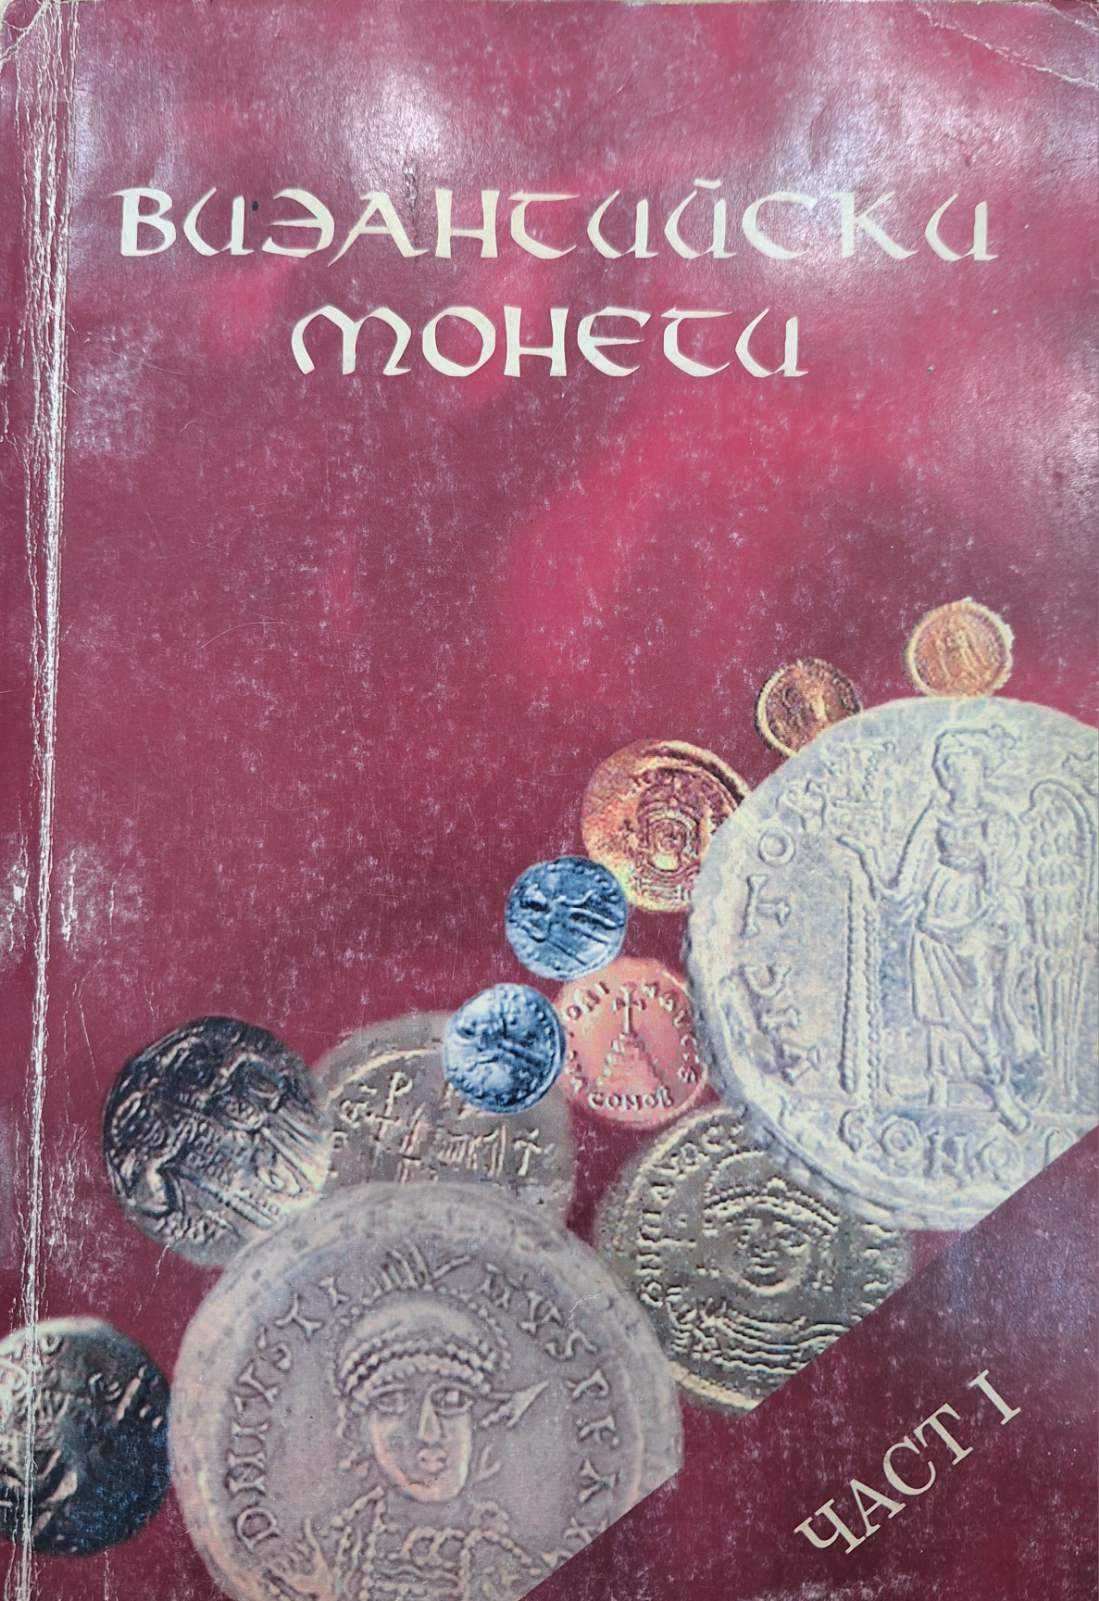 Византийски монети - Част 1